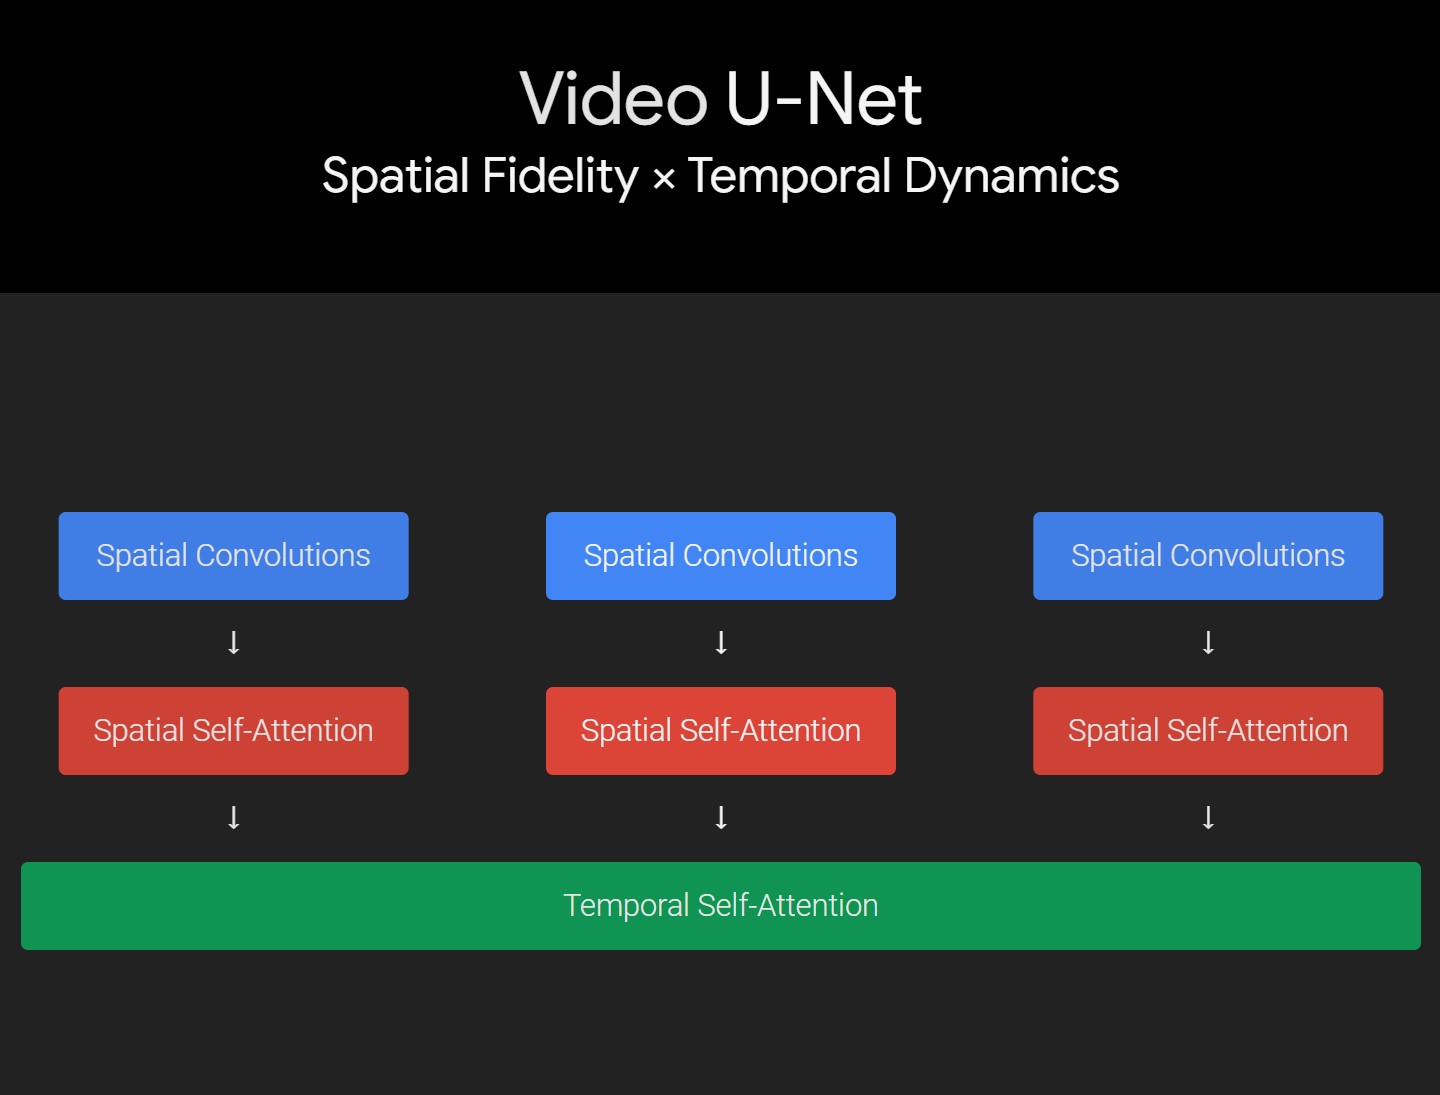 Google家的Text-to-Video模型——高清晰度高帧率的视频生成模型Imagen Video